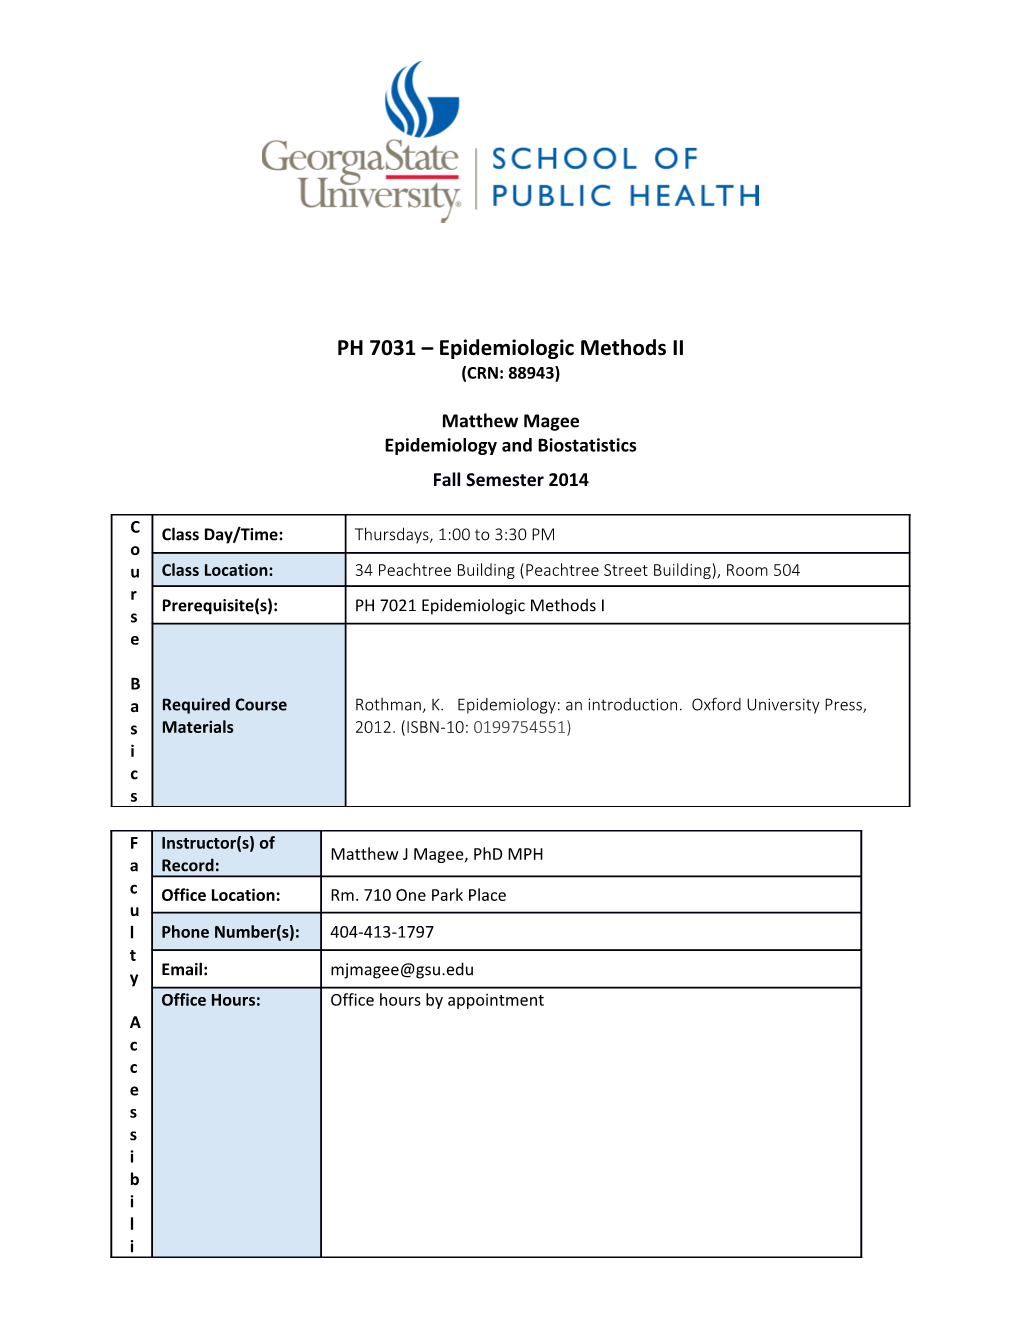 PH 7031 Epidemiologic Methods II